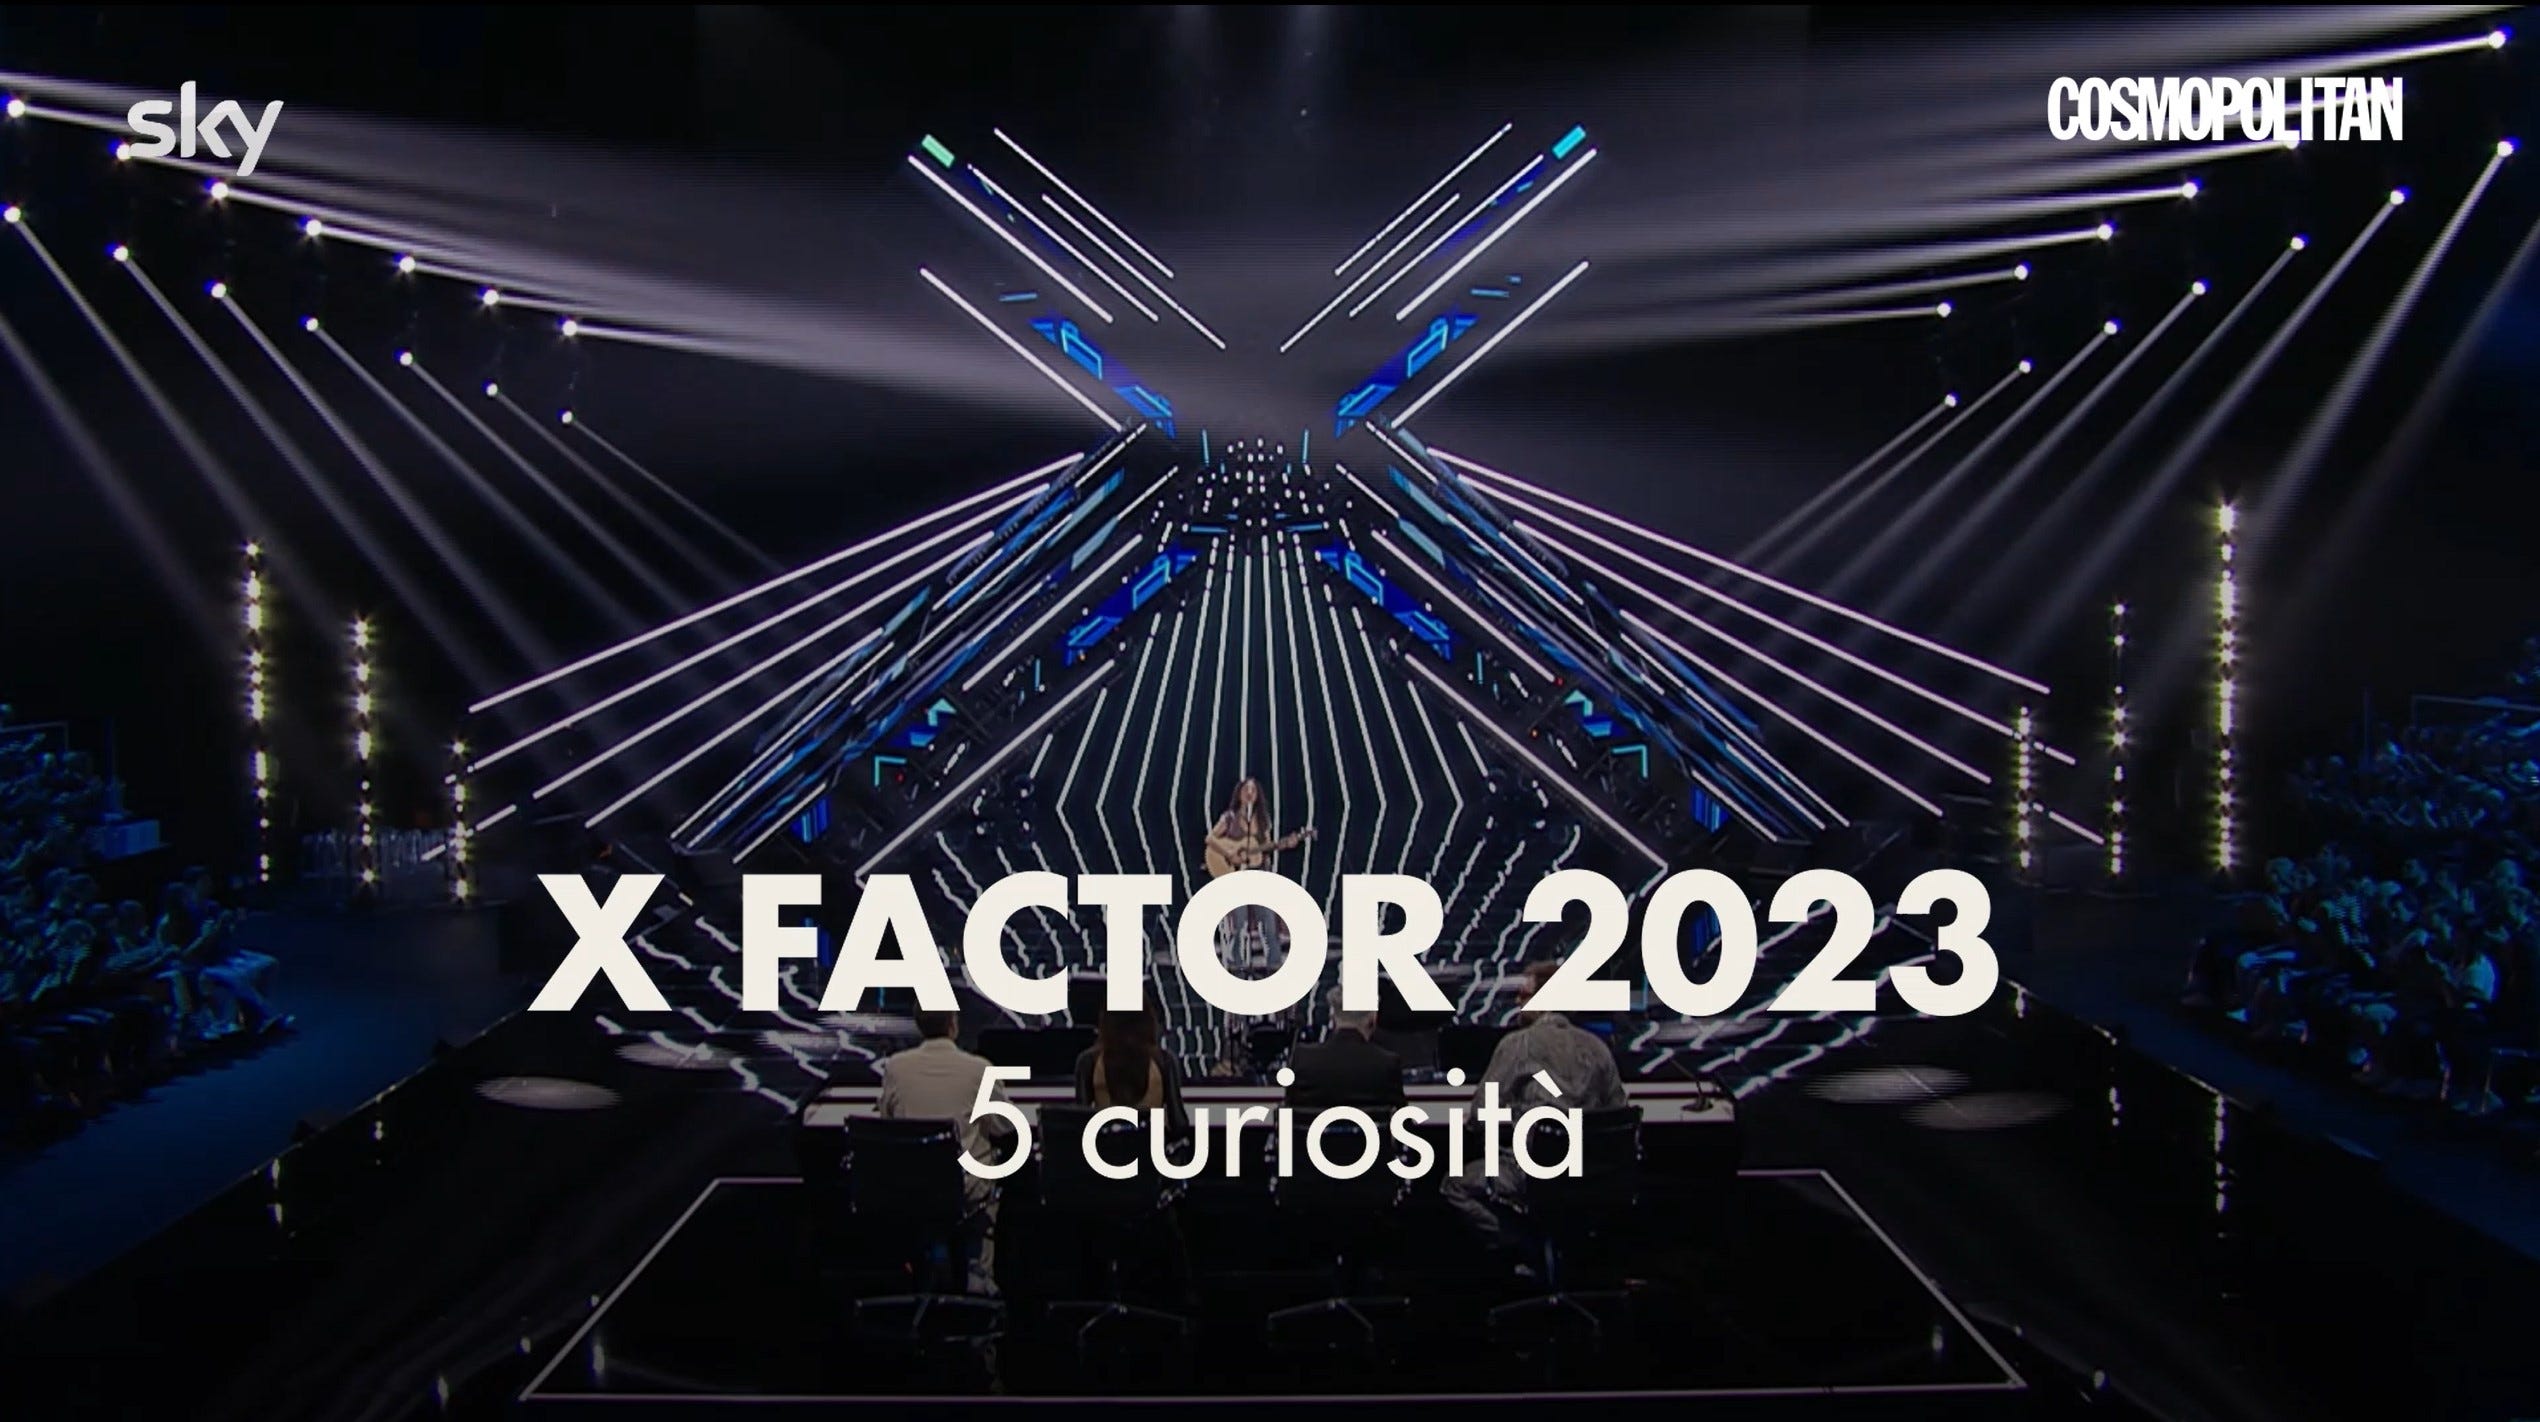 Perché sarebbe giusto chiudere X Factor 2023 (sì, c'entra Morgan)